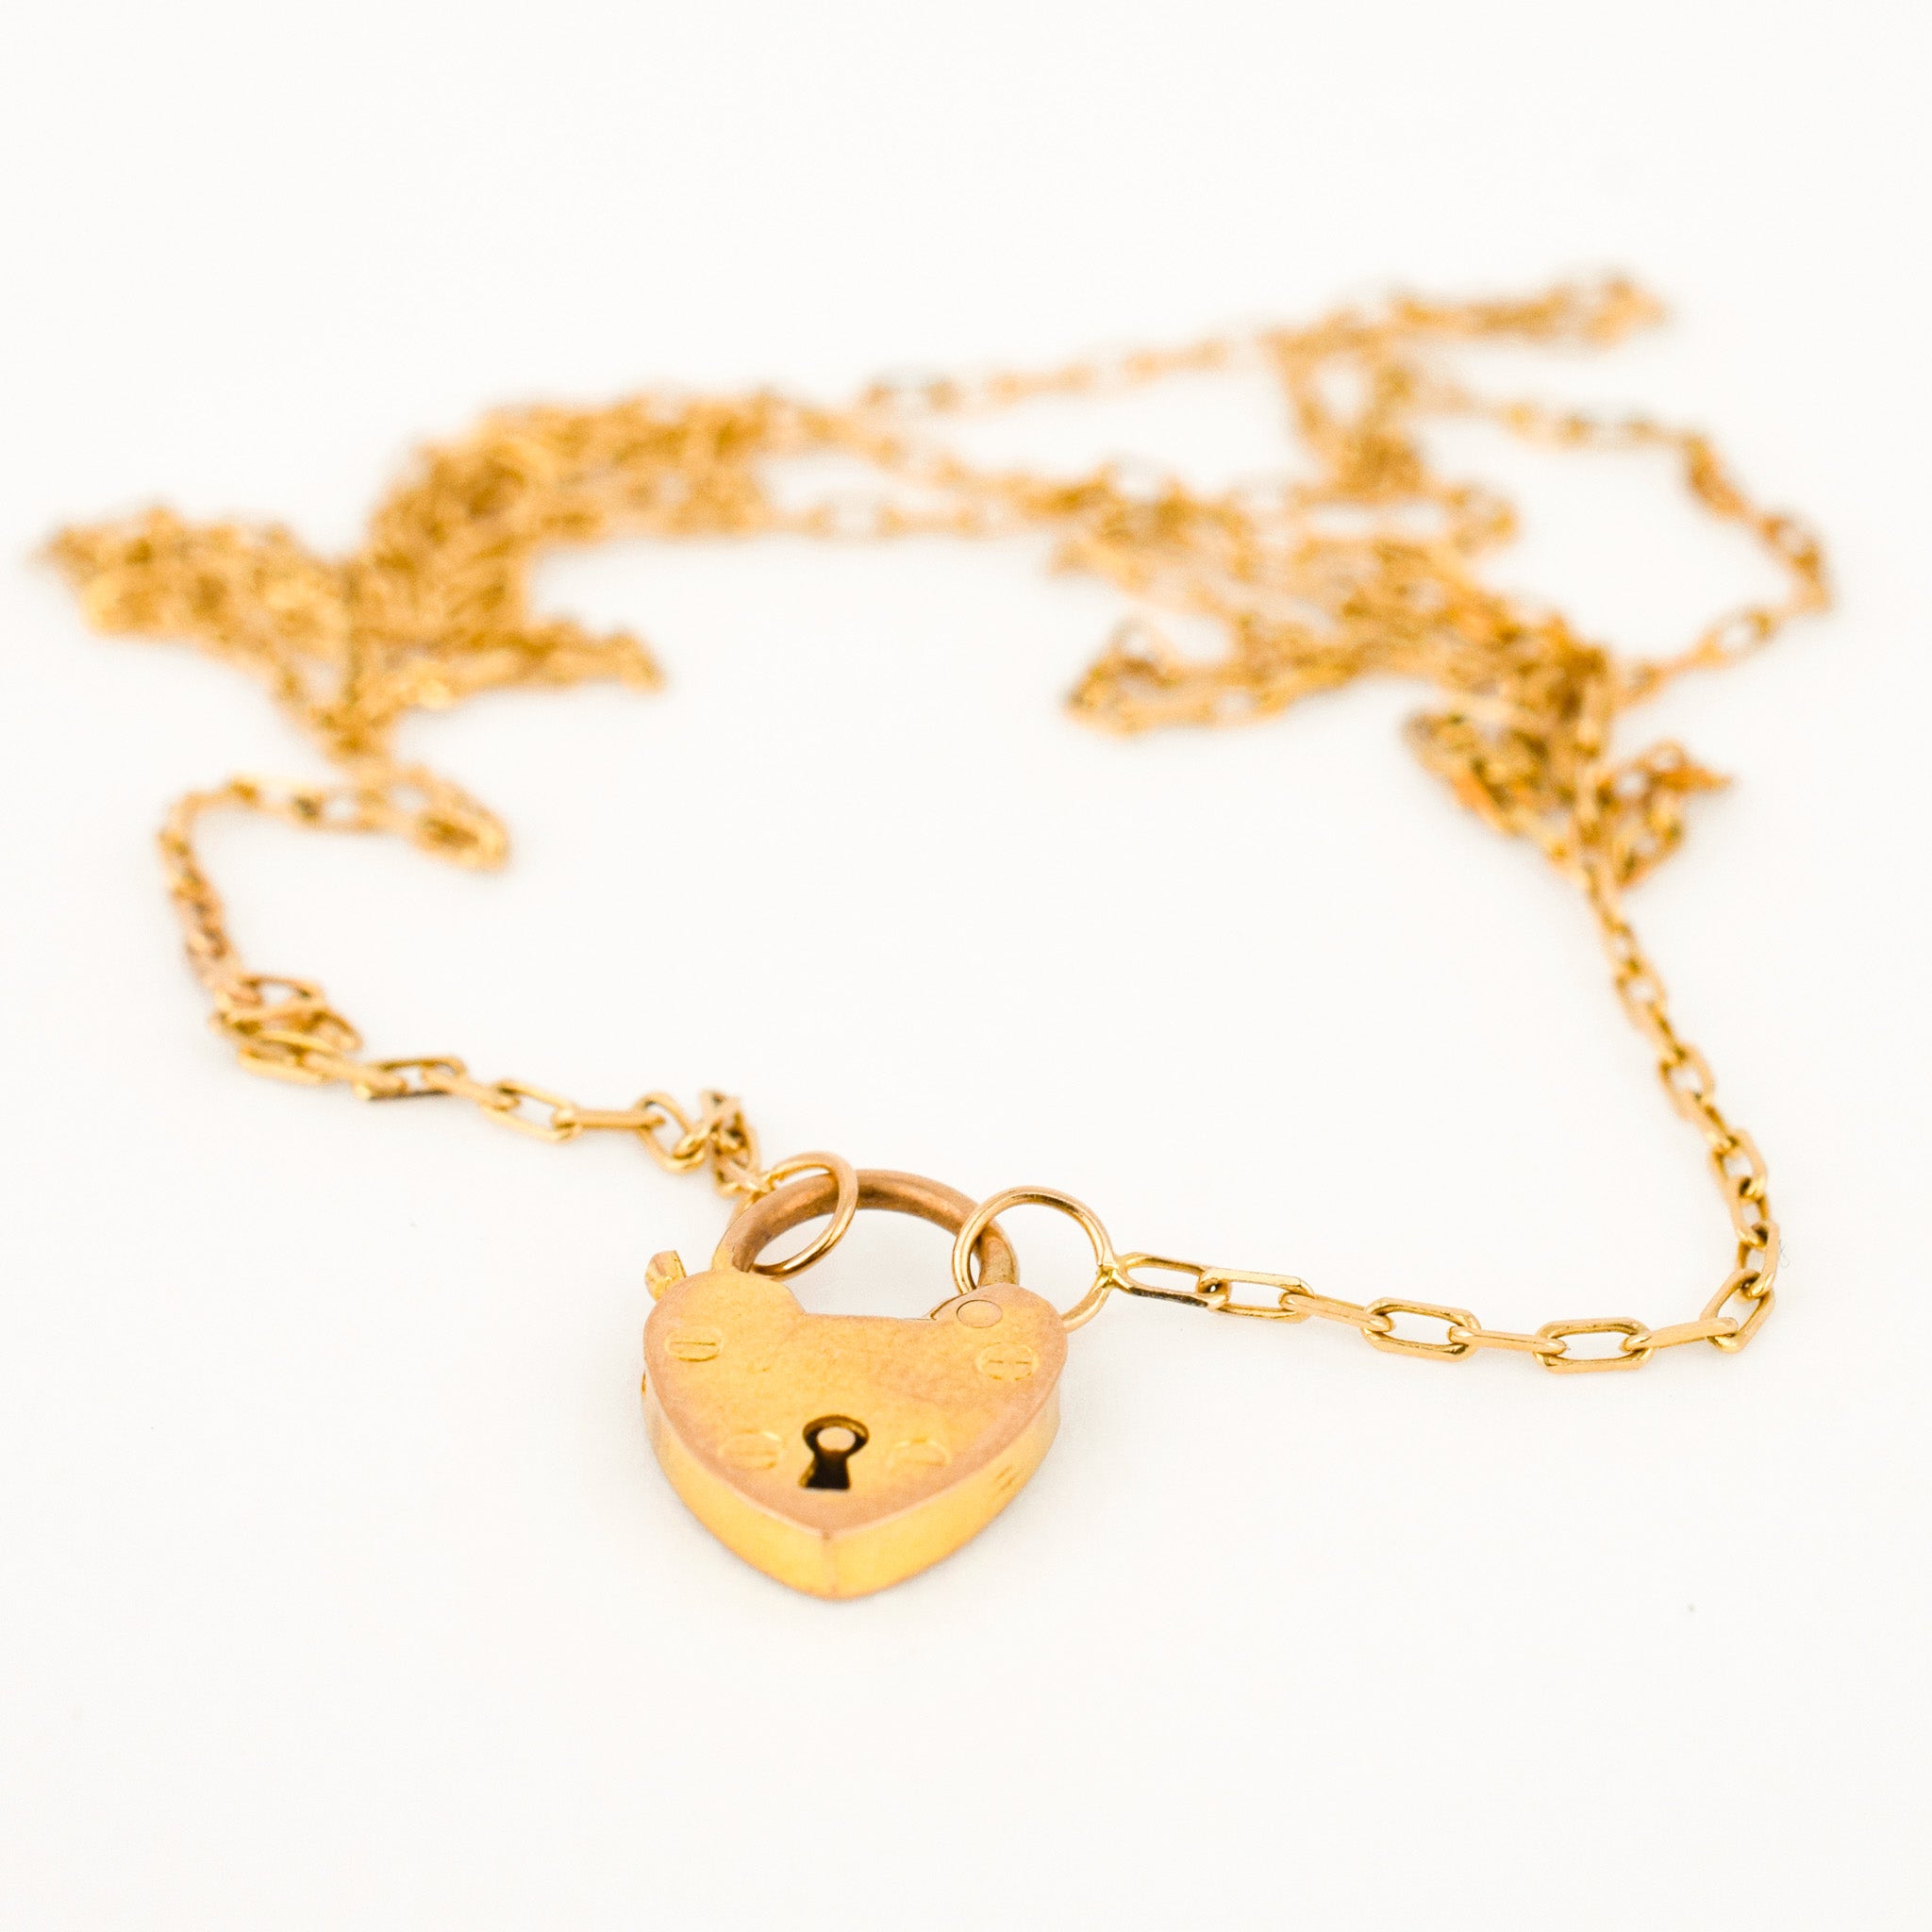 Antique Heart Padlock Clasp Conversion Necklace